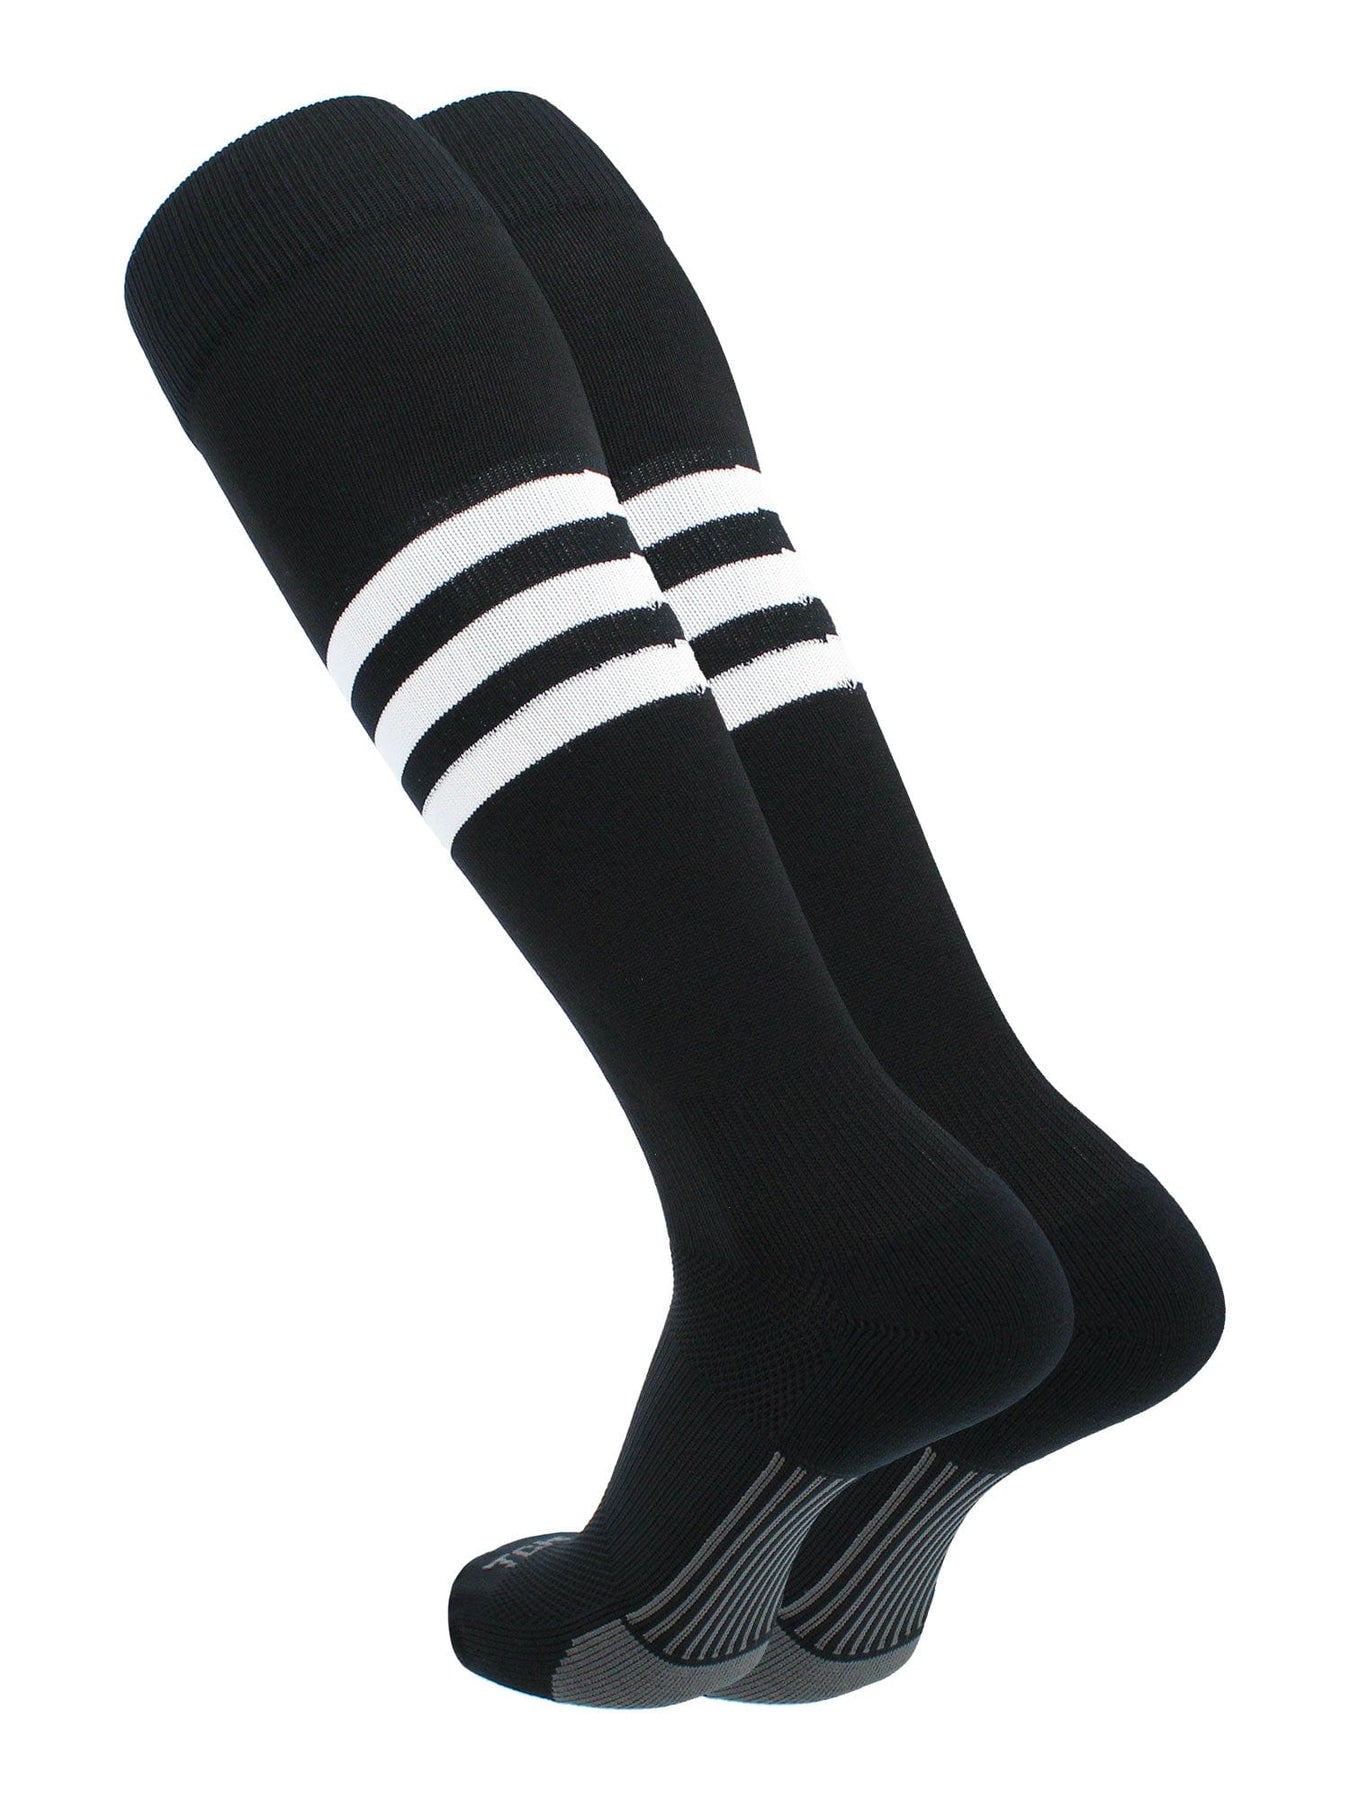 TCK - Sport Socks For Baseball, Softball, Soccer, Basketball, Football